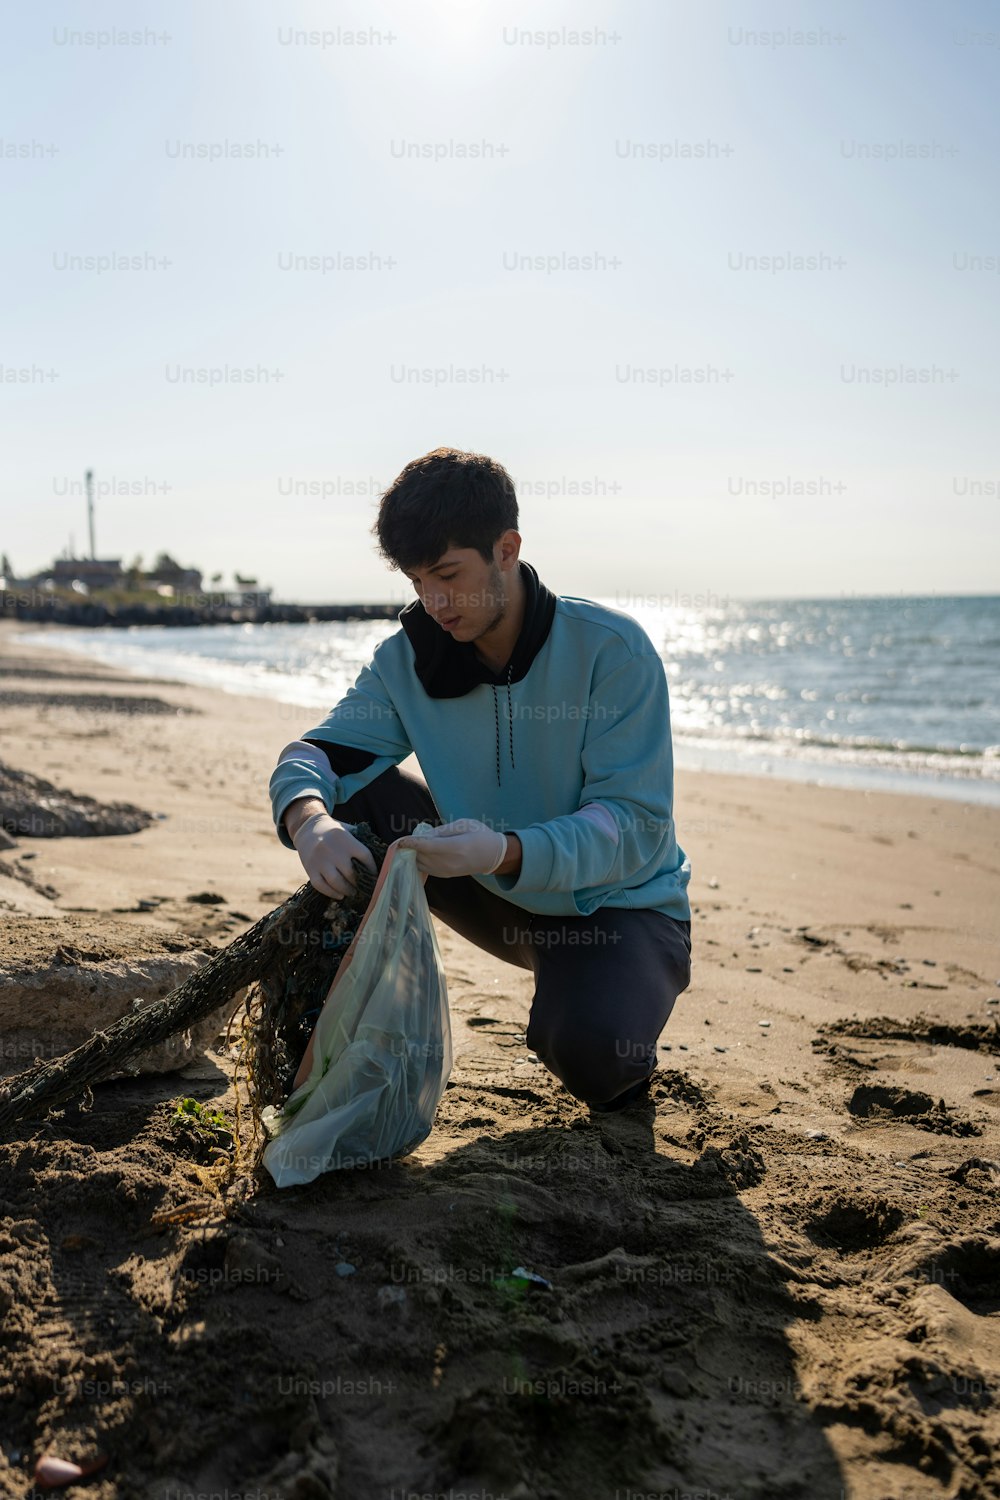 Un homme agenouillé sur une plage à côté d’un sac